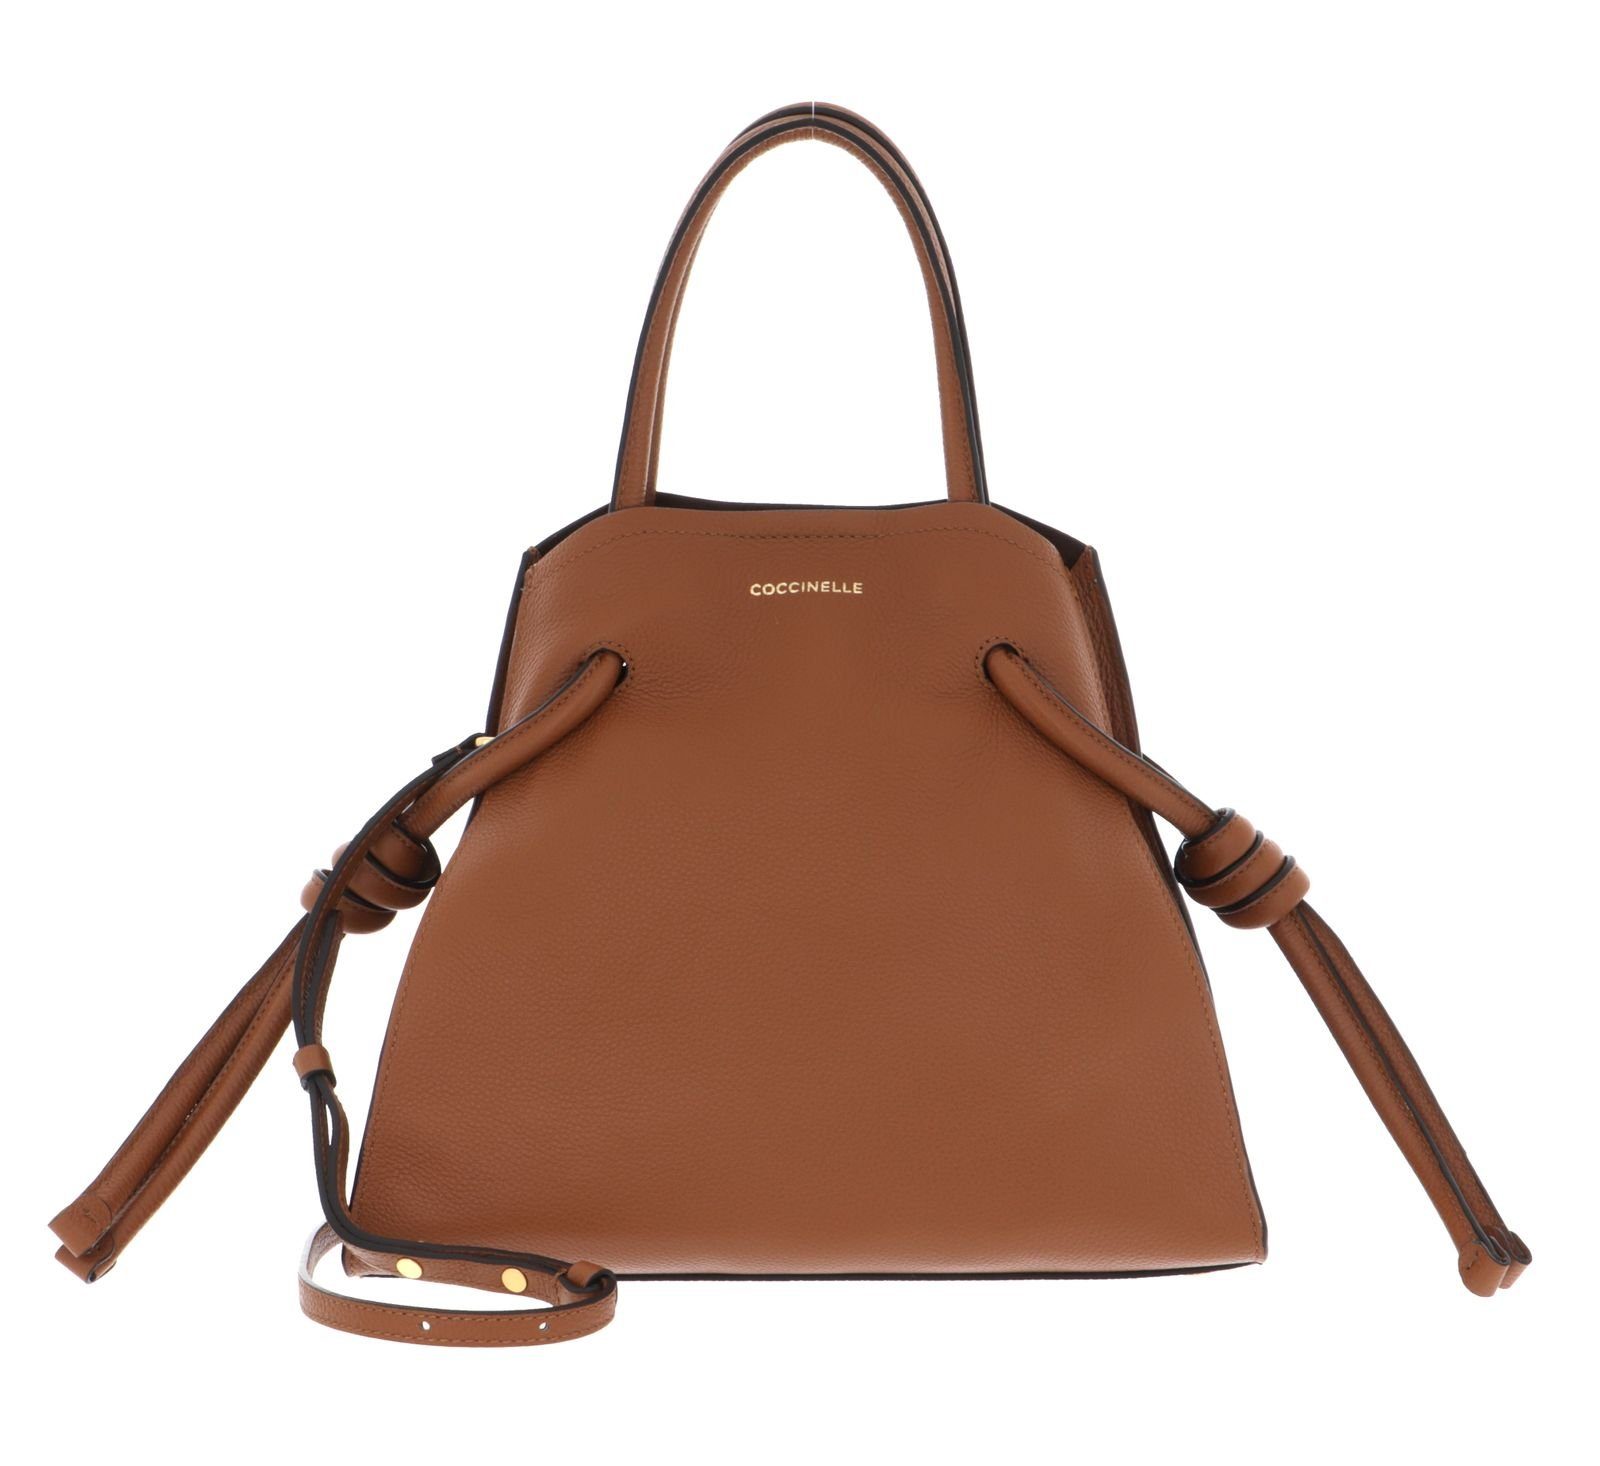 COCCINELLE Handtasche »Allure« online kaufen | OTTO